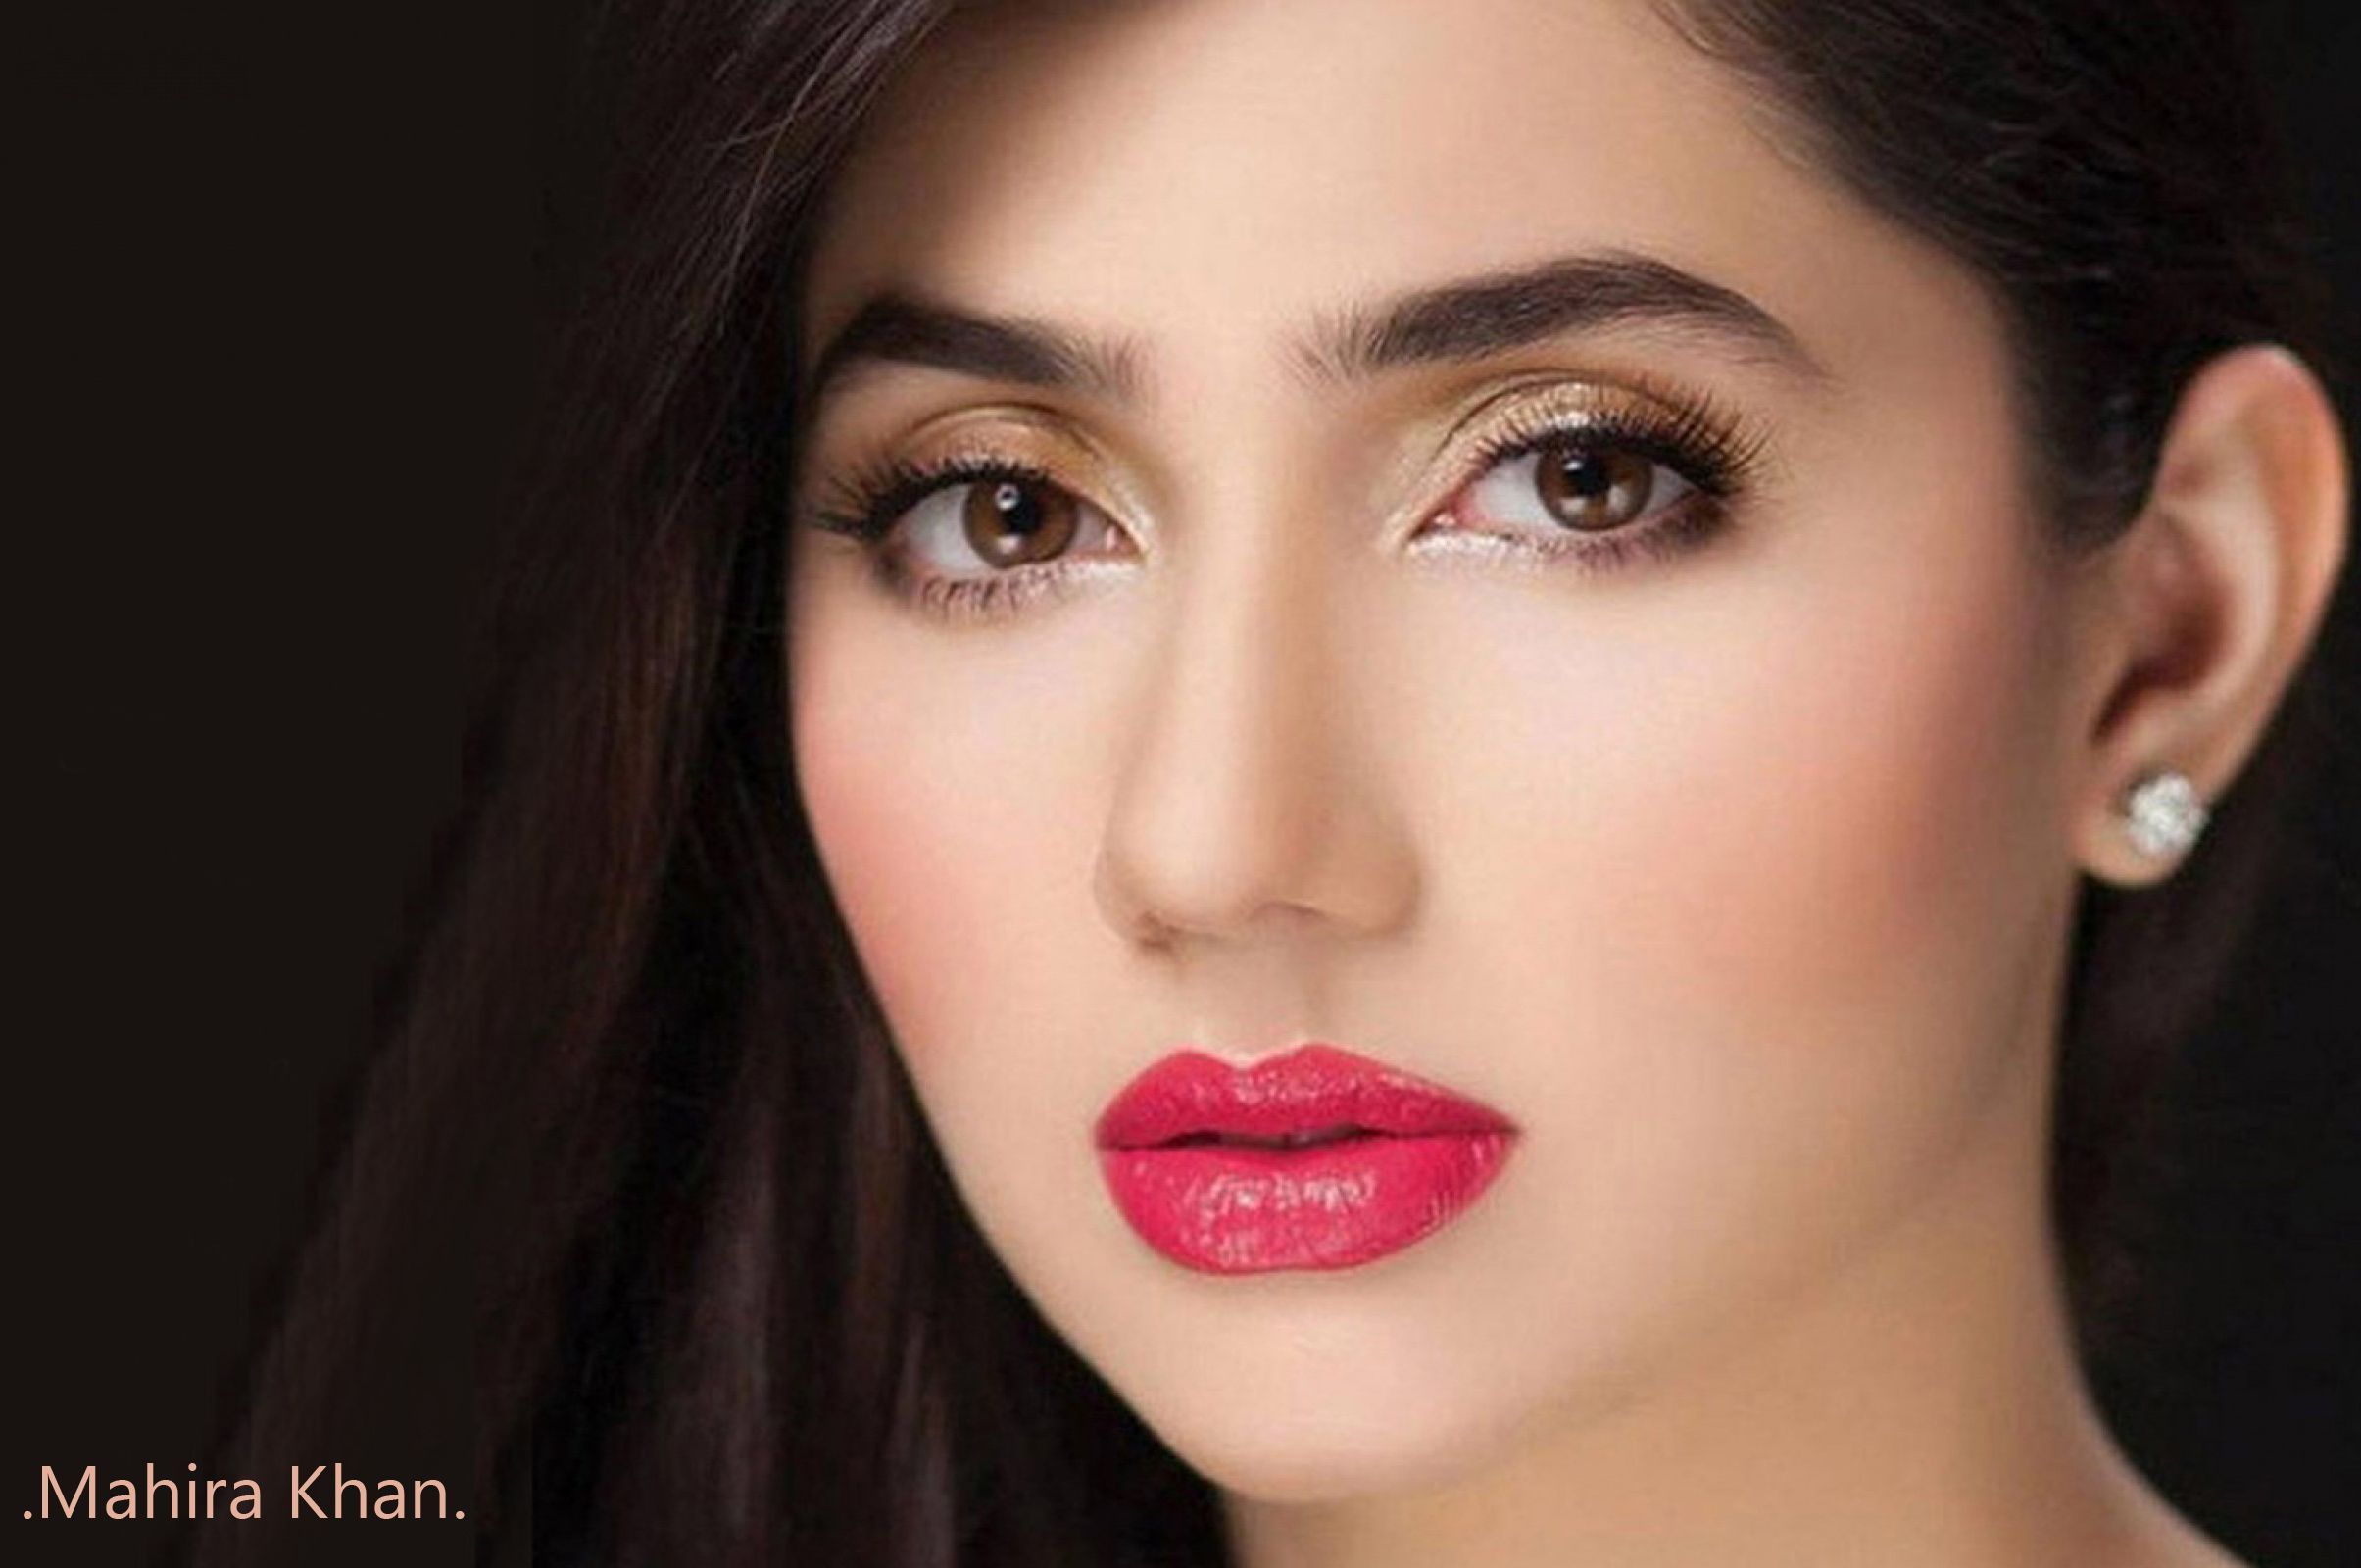 Mahira Khan Close Up Photo Celebrity Wallpaper. Celebrity eye makeup, Without makeup, Fair skin